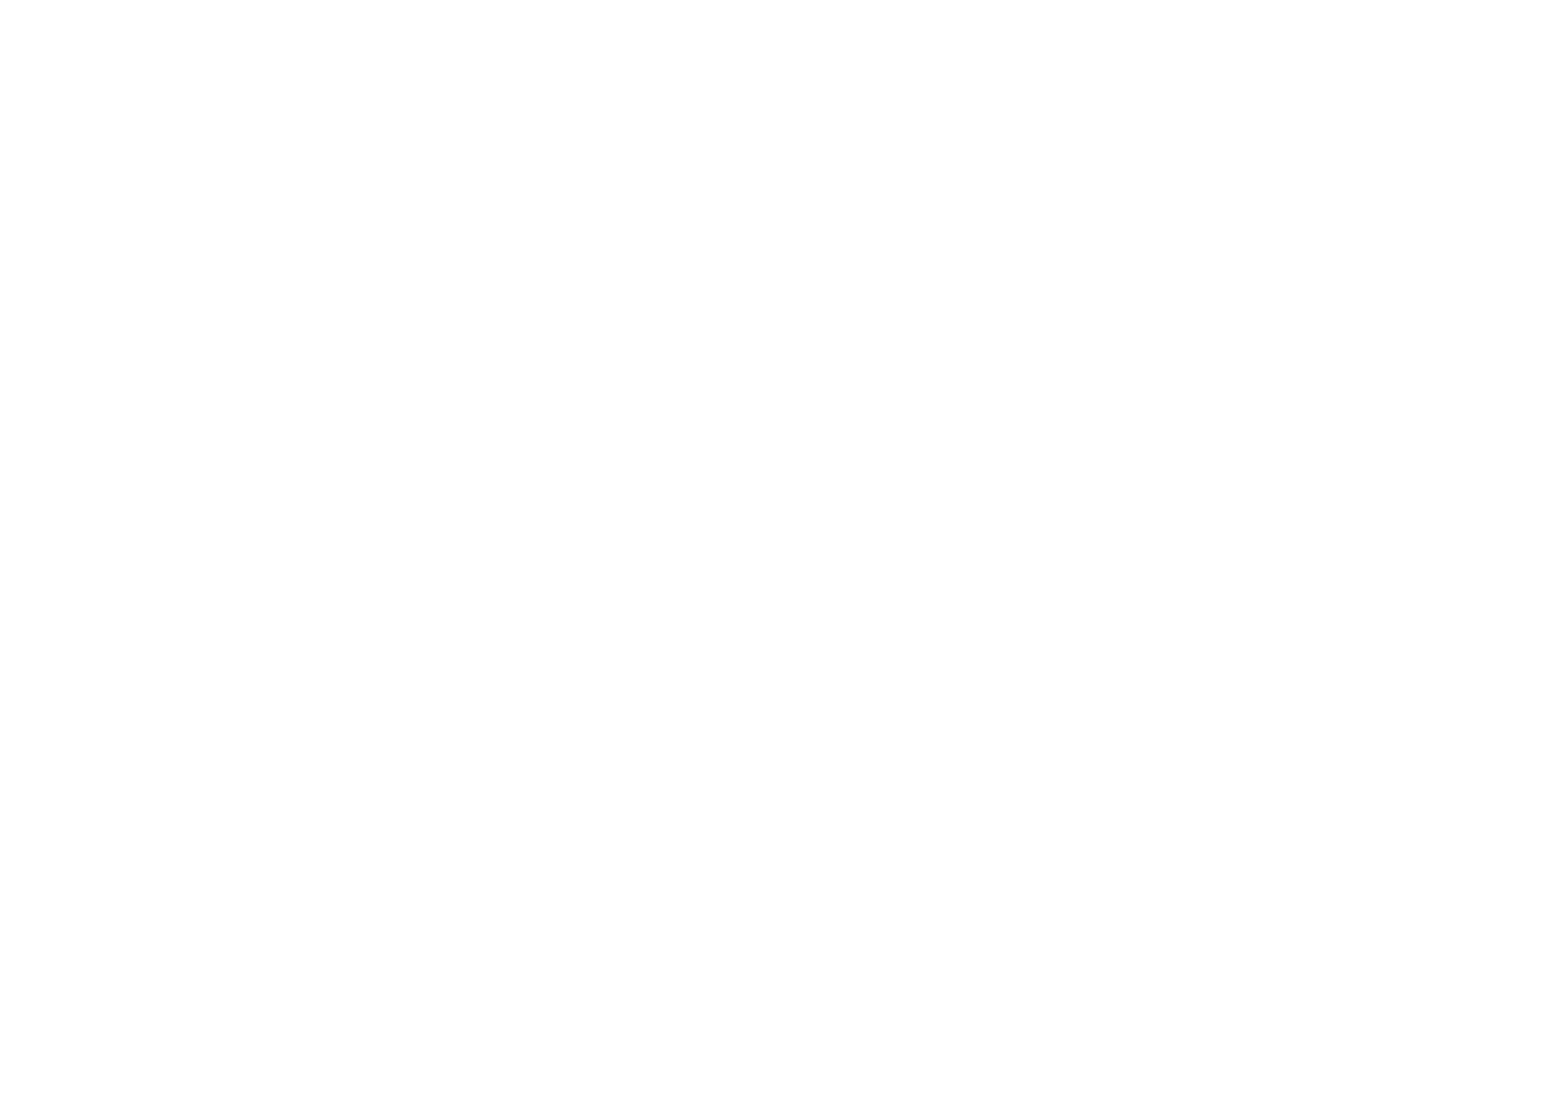 Kuwait Cement Company logo grand pour les fonds sombres (PNG transparent)